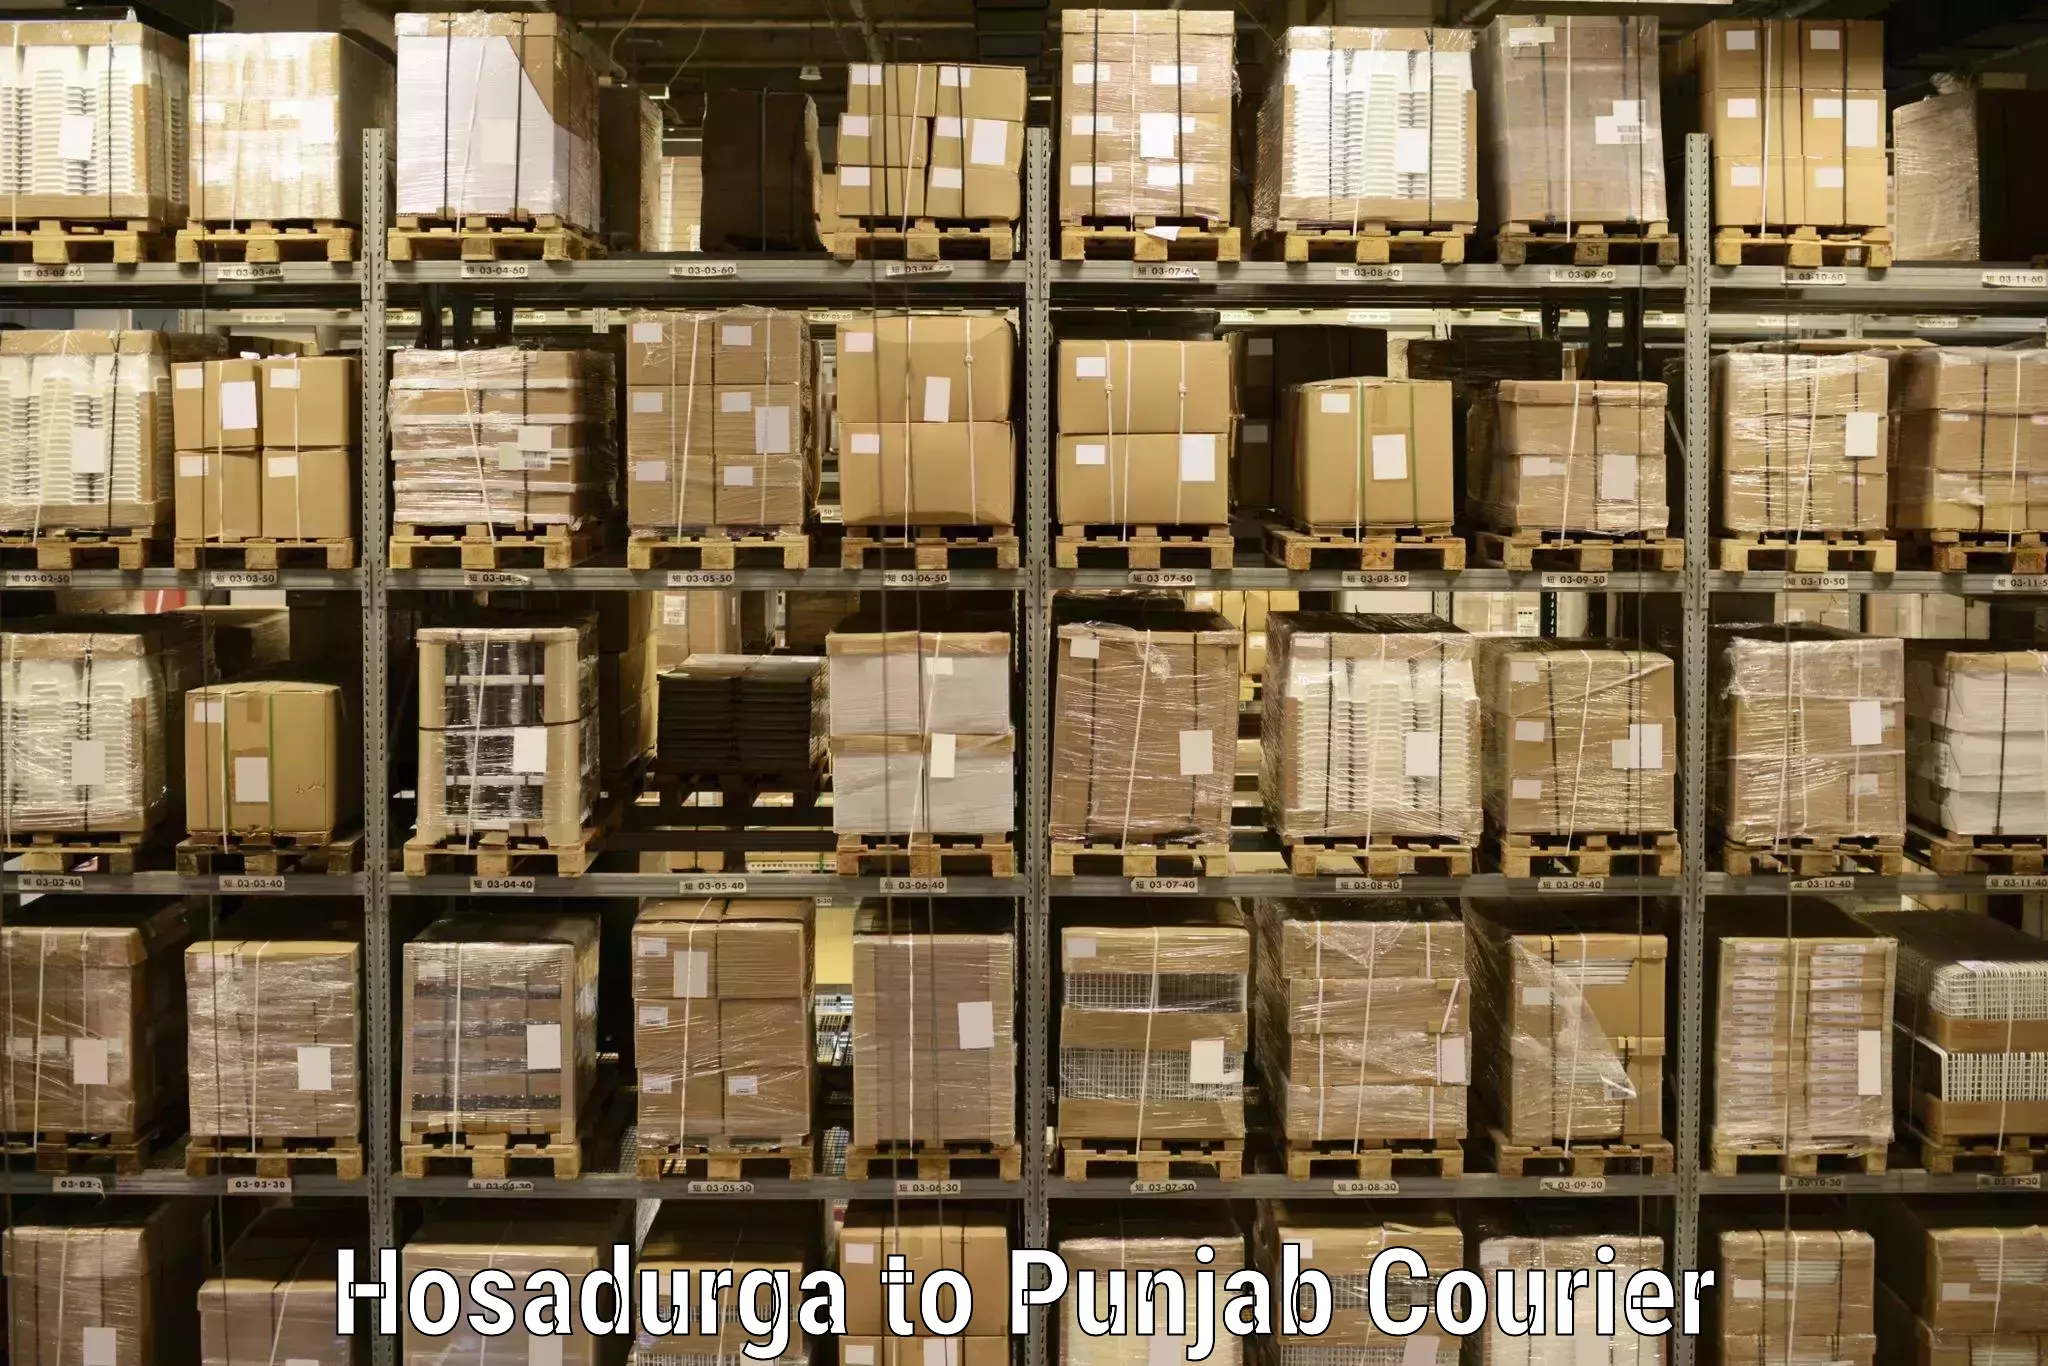 Pharmaceutical courier Hosadurga to Central University of Punjab Bathinda